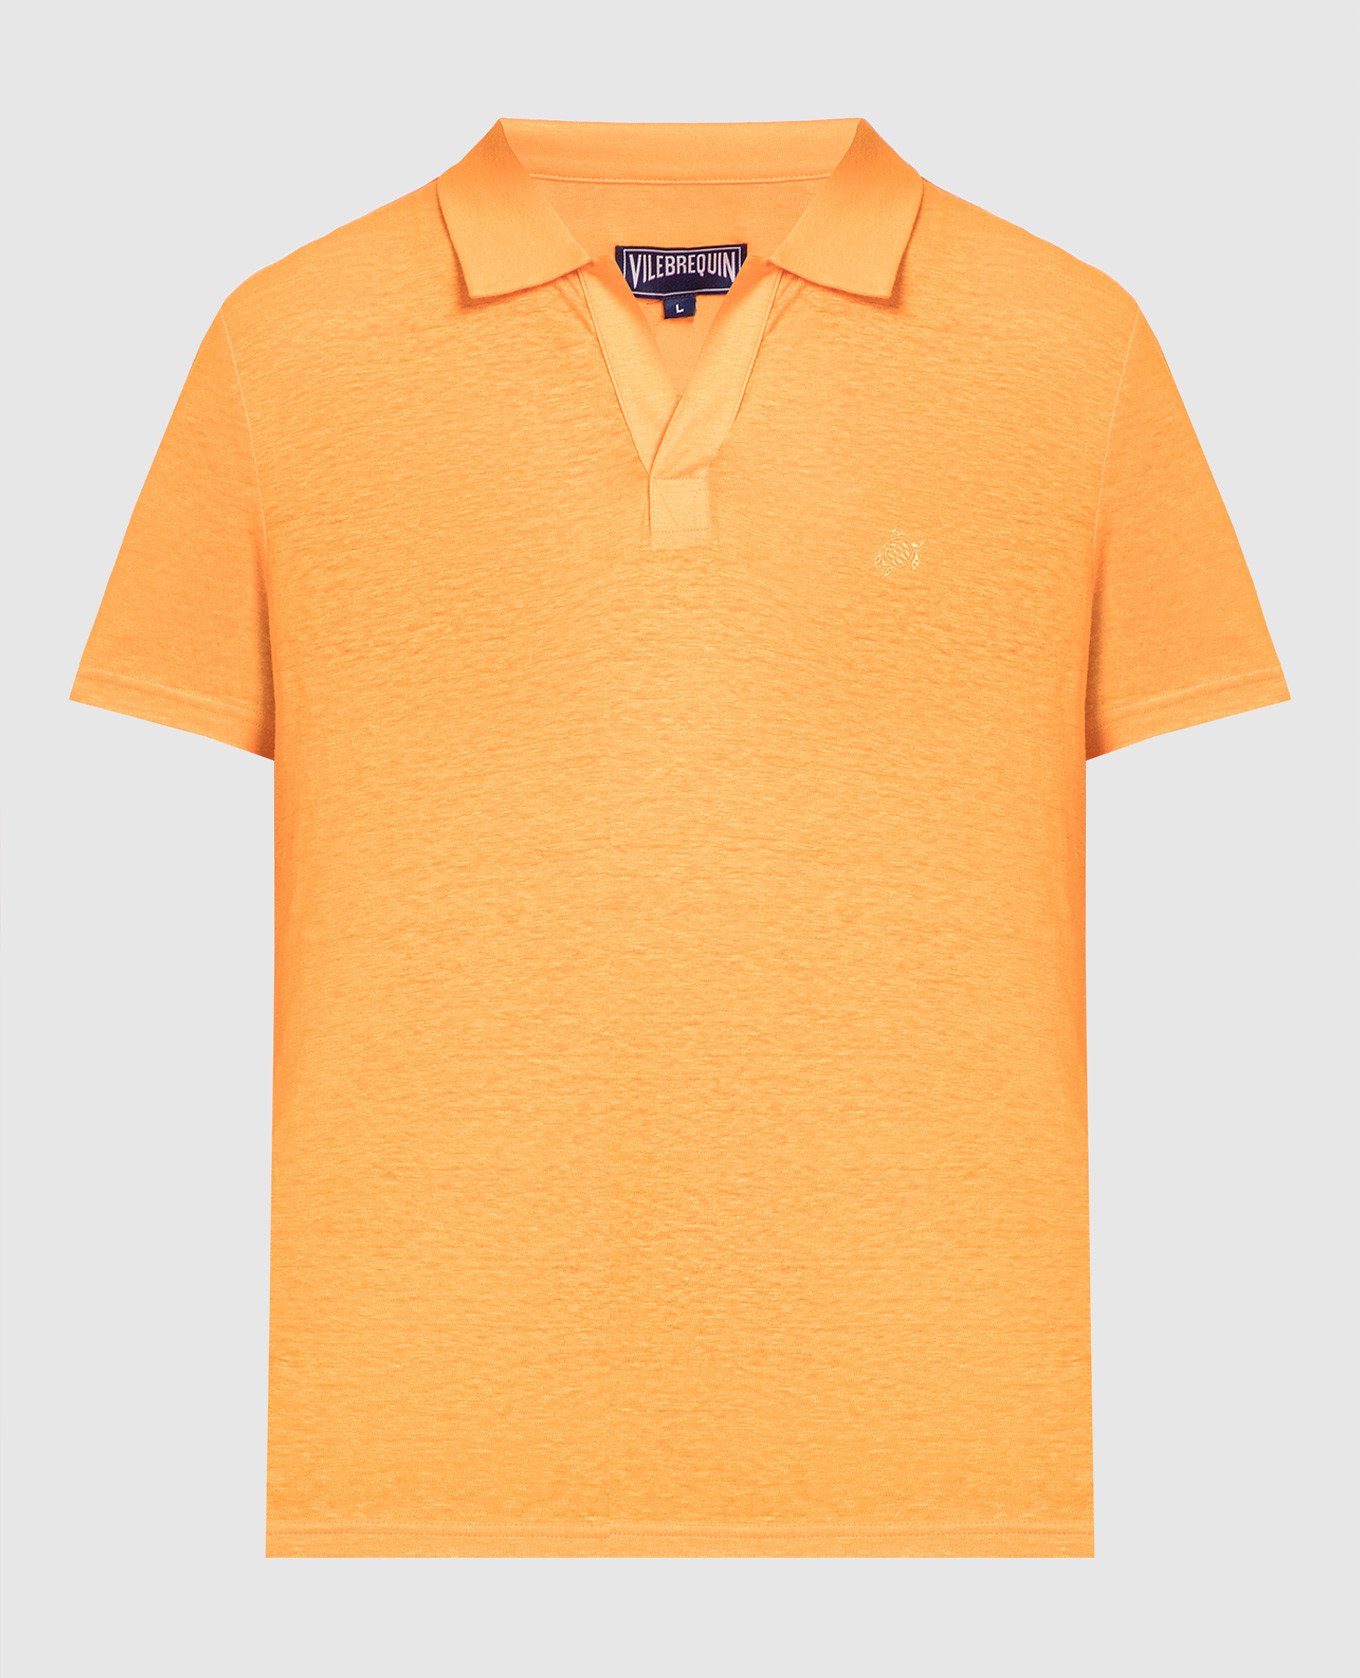 Pyramid linen polo shirt in orange